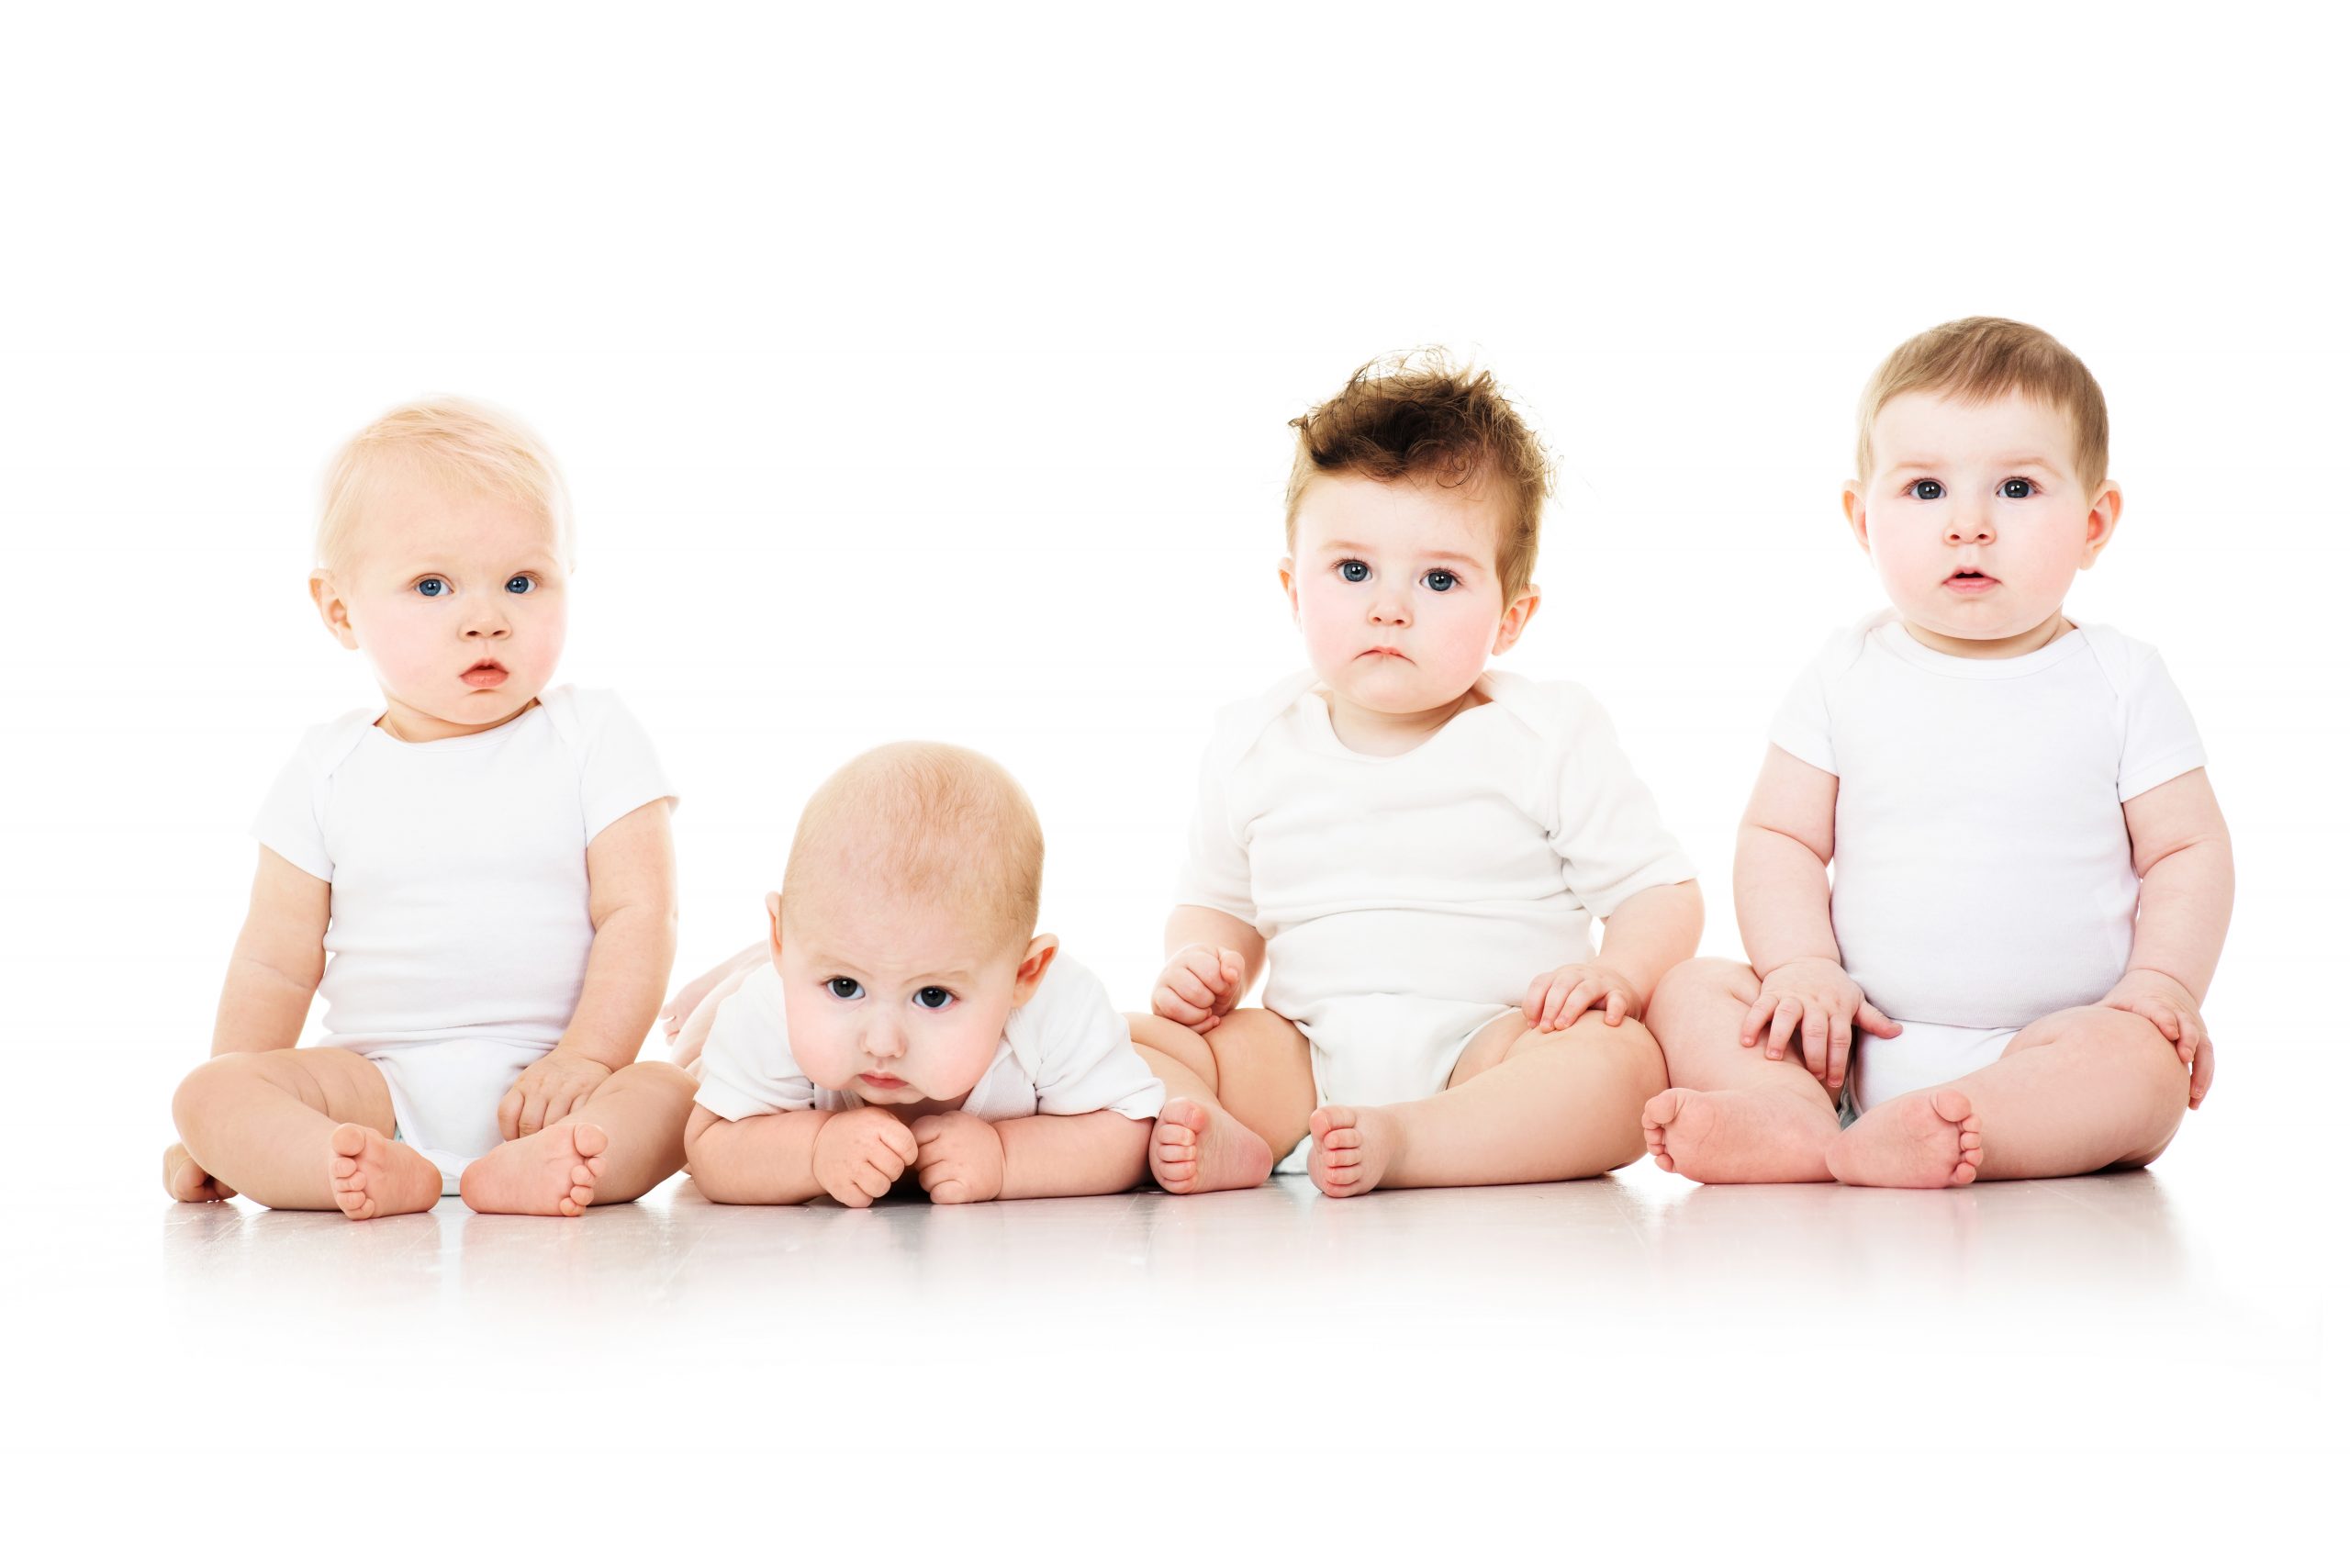 La estimulación temprana es clave para favorecer el desarrollo de los niños  prematuros